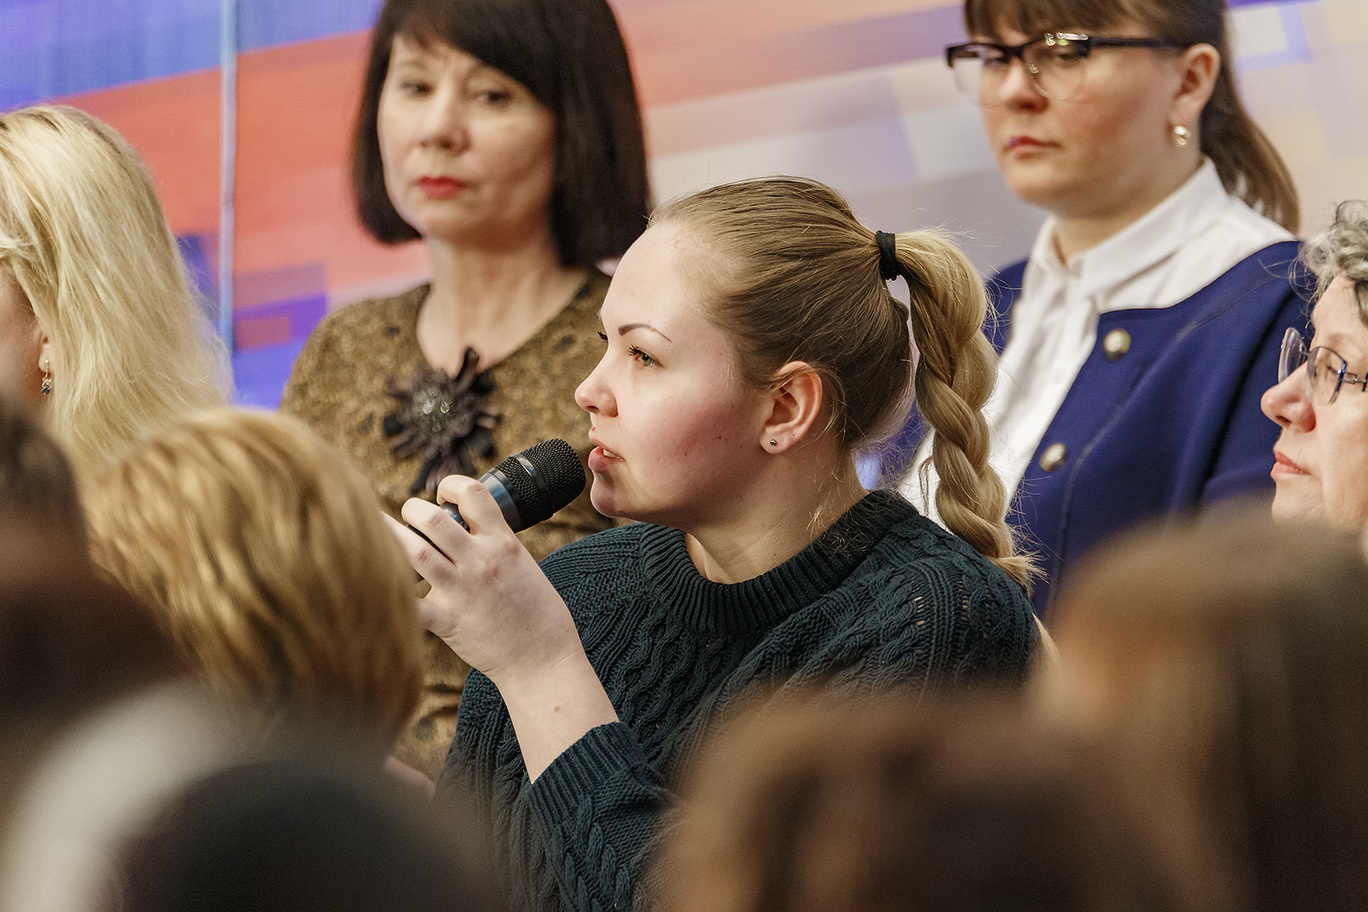   Дебаты участников предварительного голосования в регионах РФ. Ханты-Мансийск